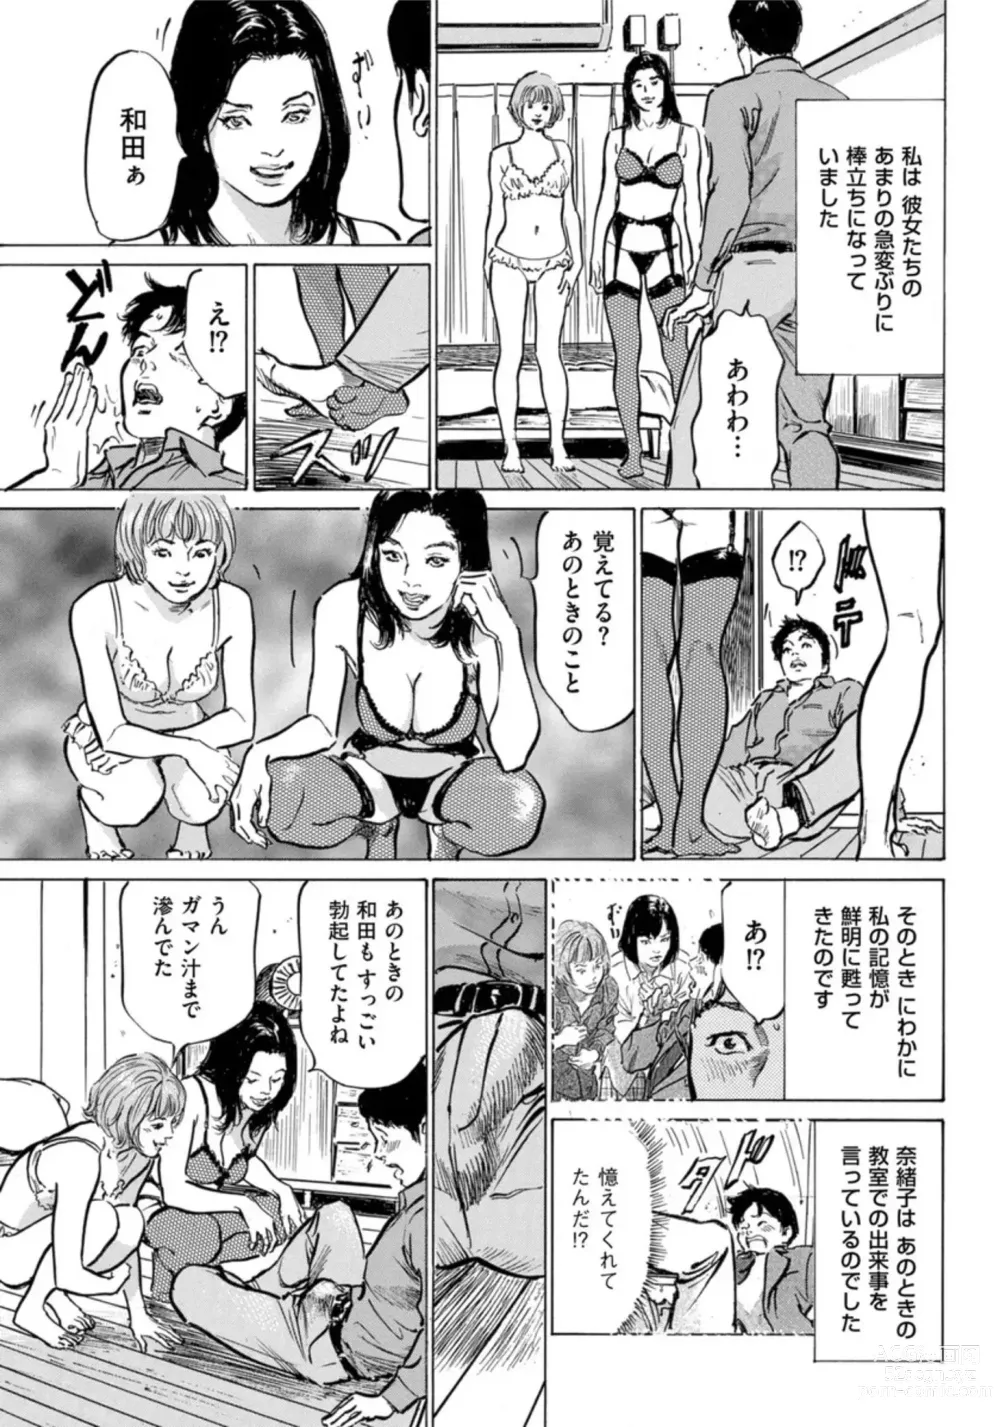 Page 220 of manga Hontou ni Atta Omowazu Zawatsuku Totteoki no Hanashi 14 episodes